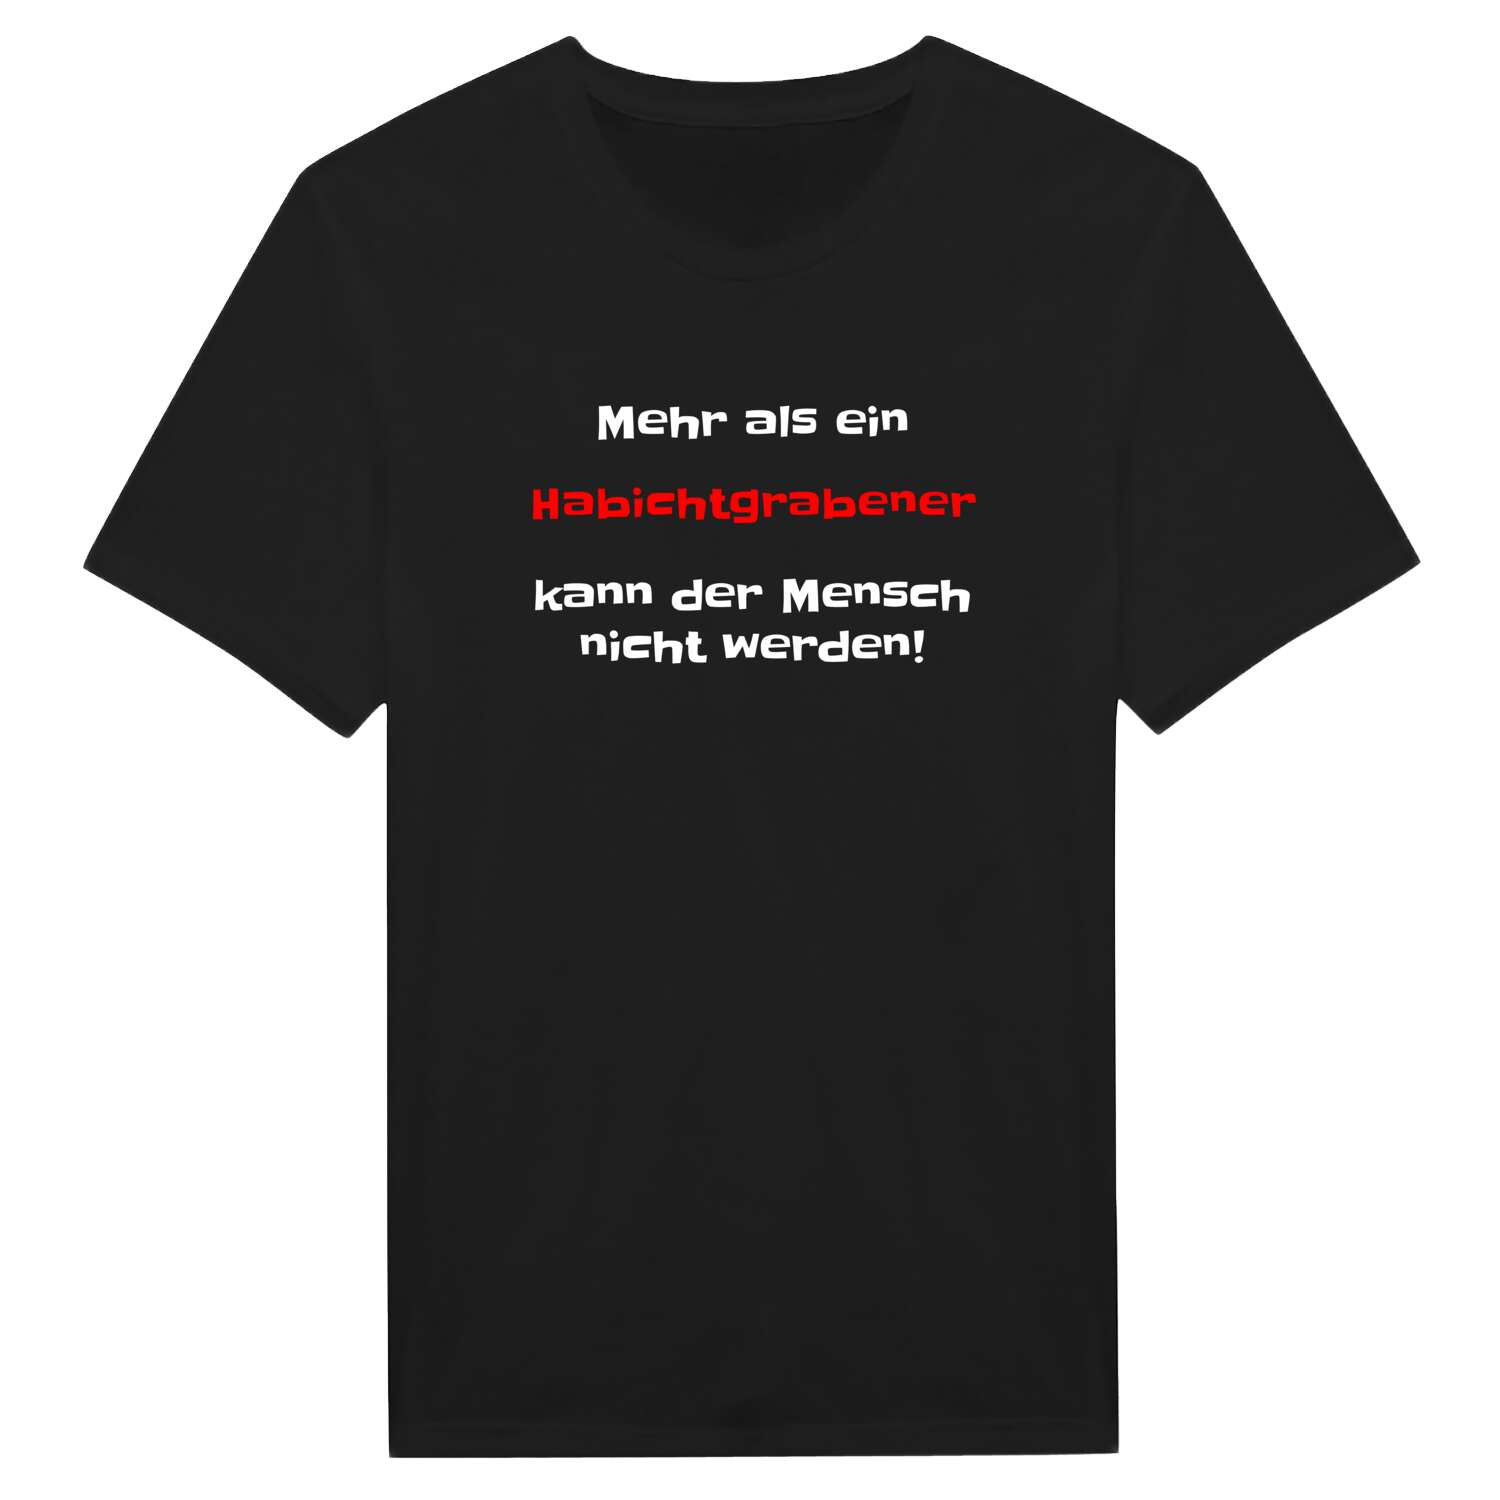 Habichtgraben T-Shirt »Mehr als ein«